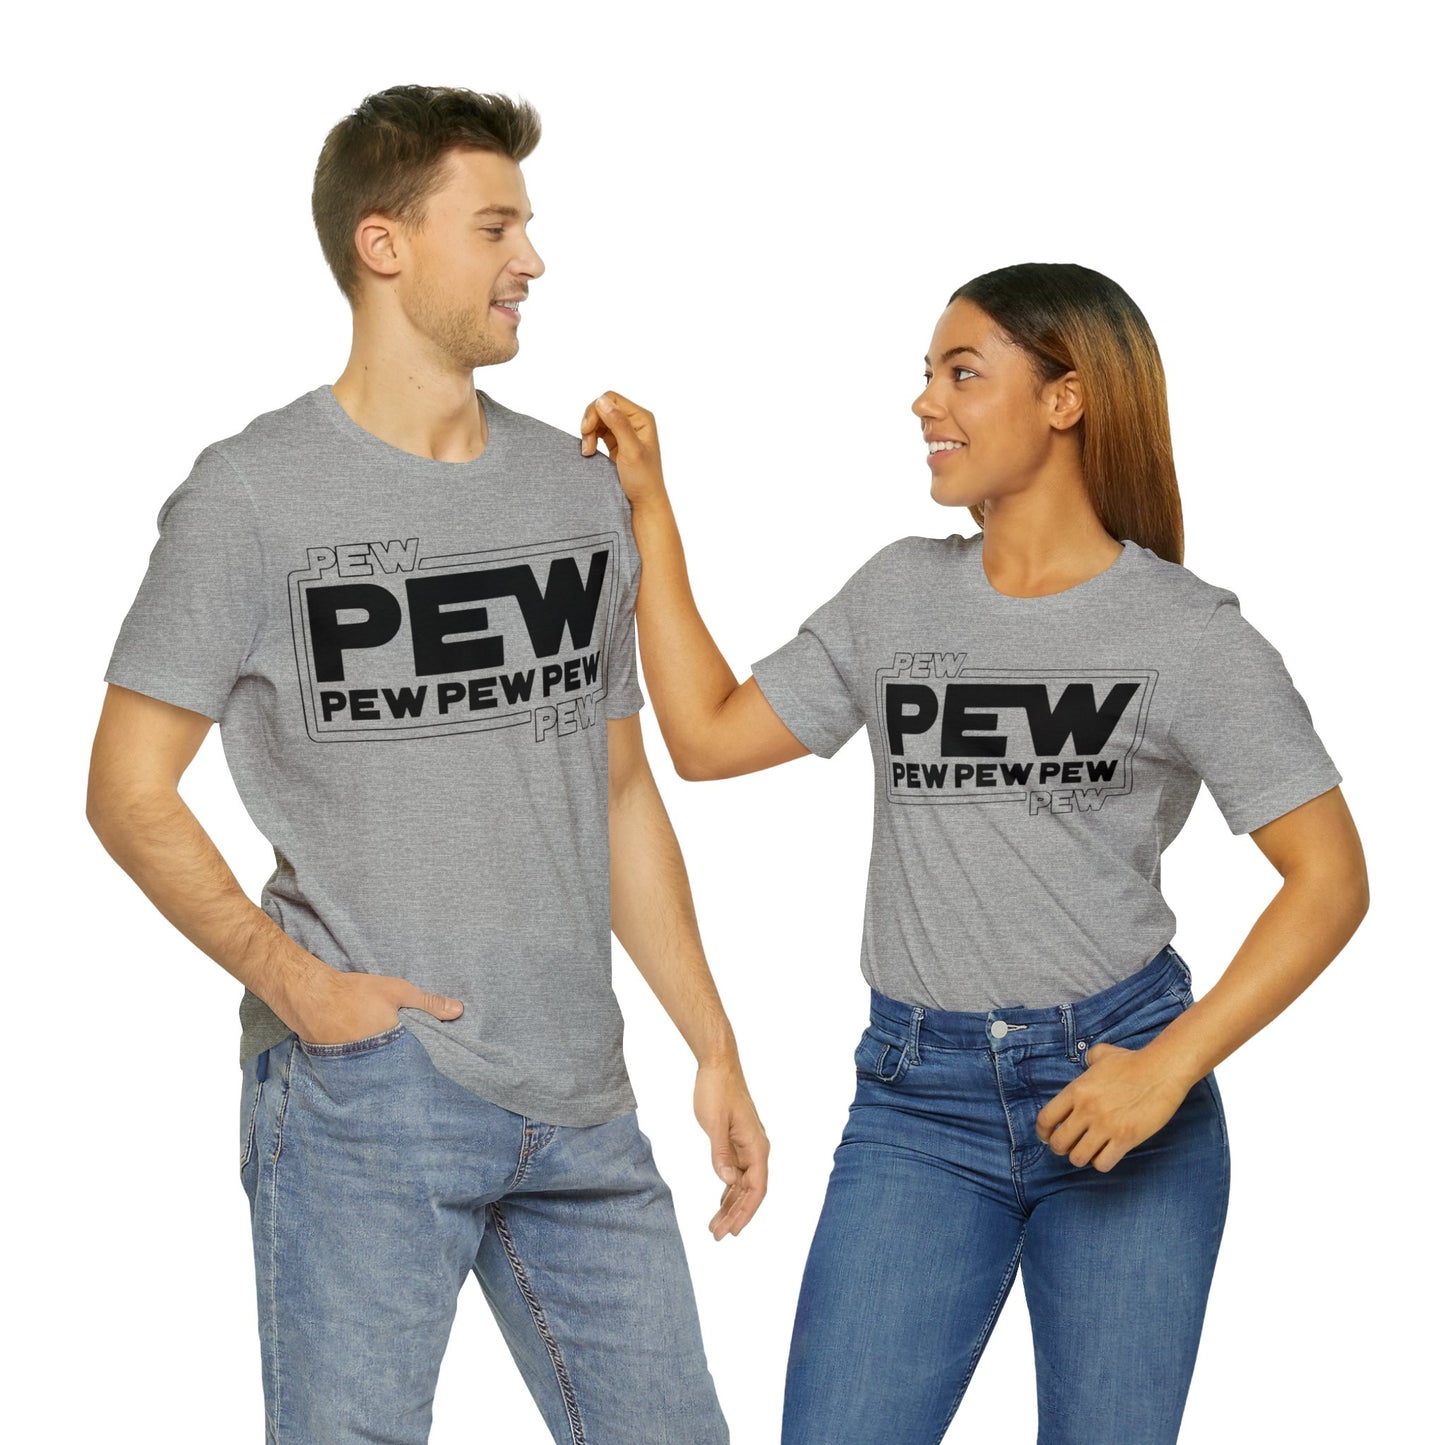 pew pew star wars tshirt